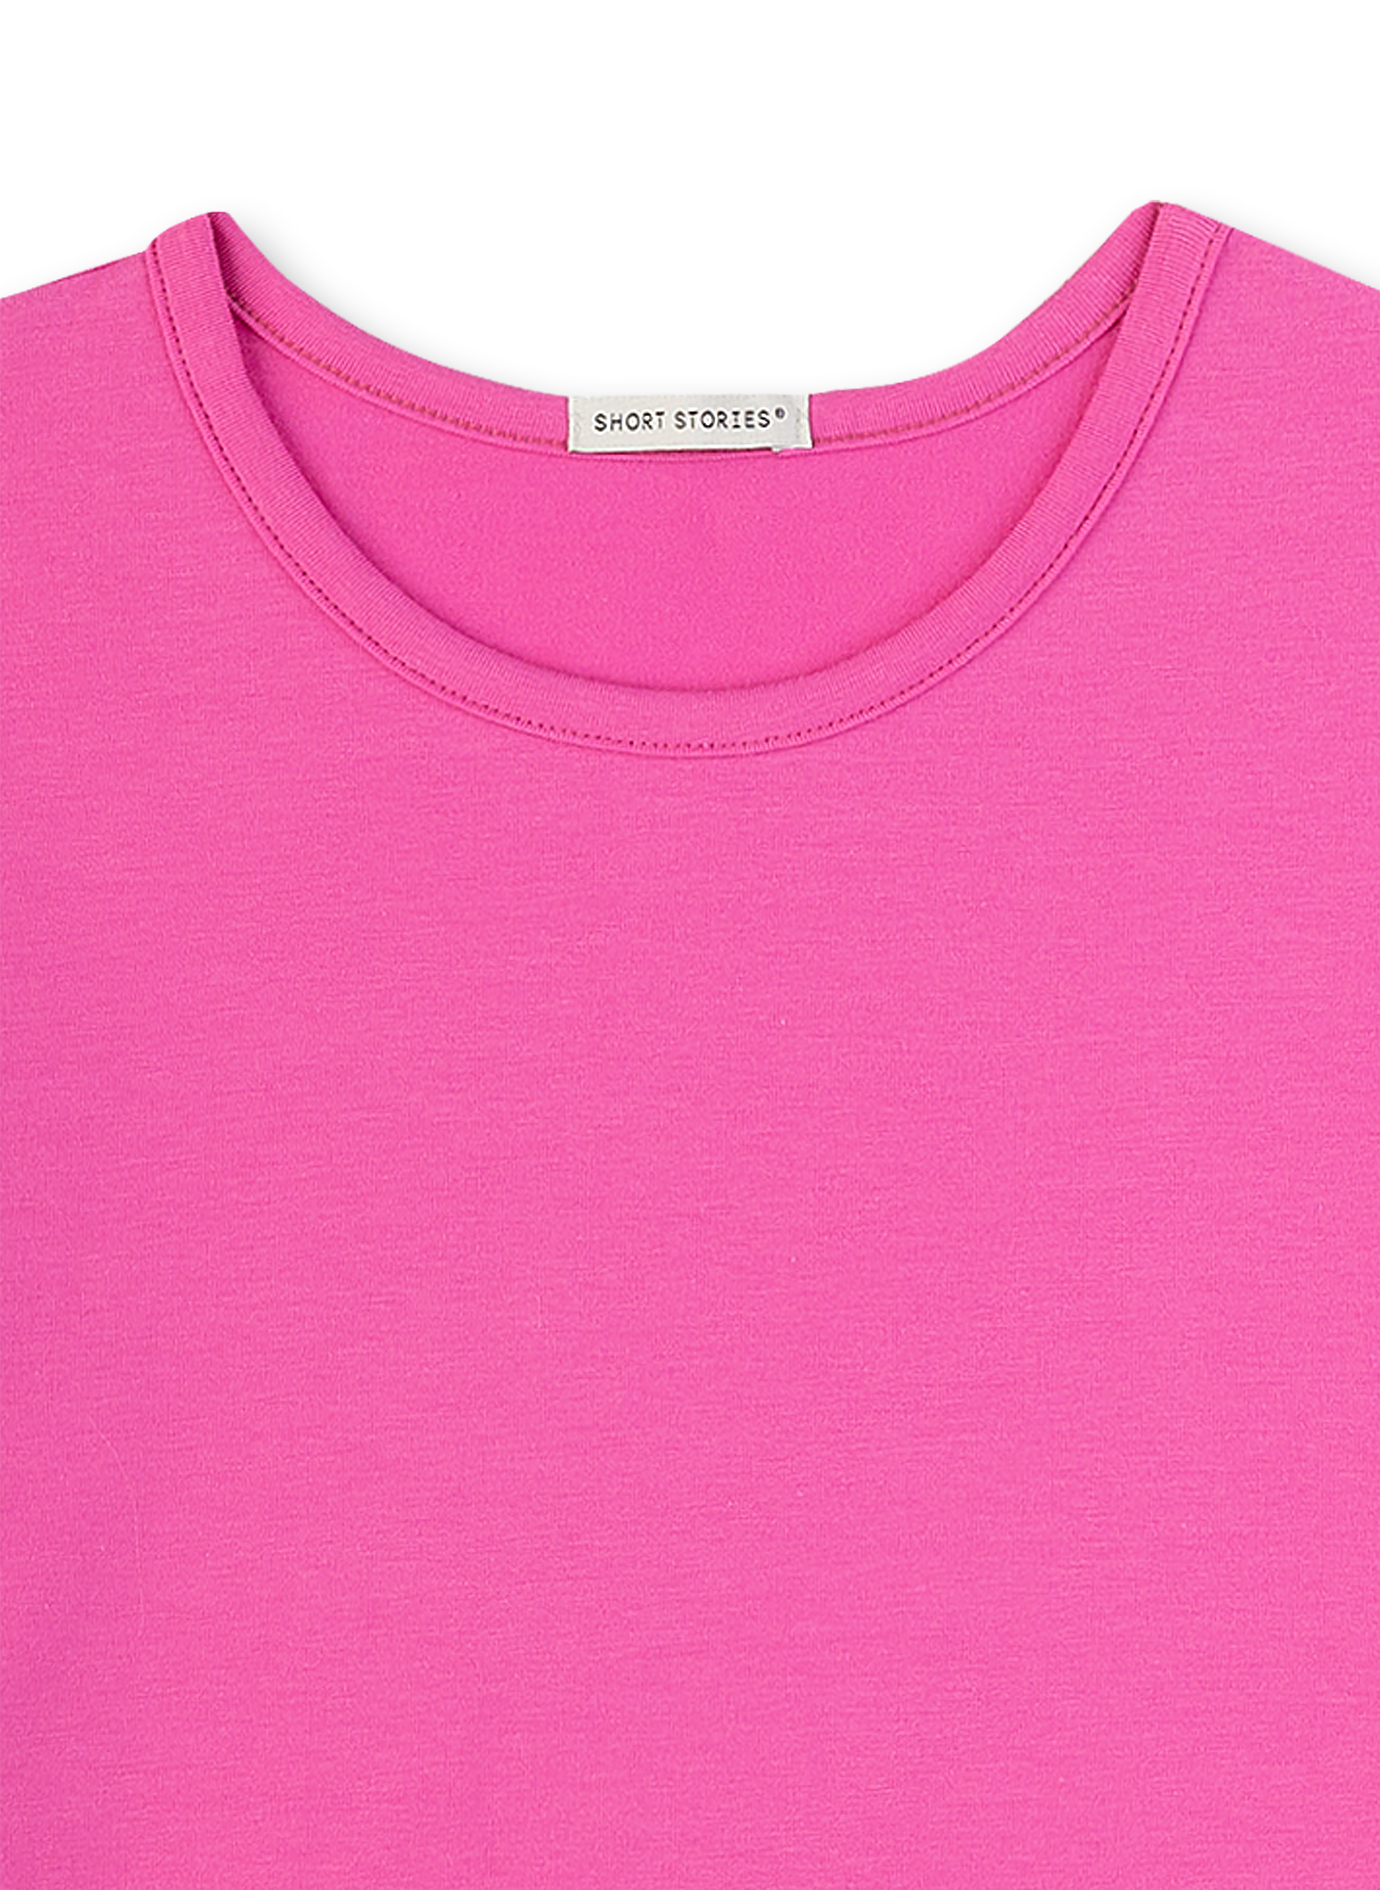 Mädchen T-Shirt Pink